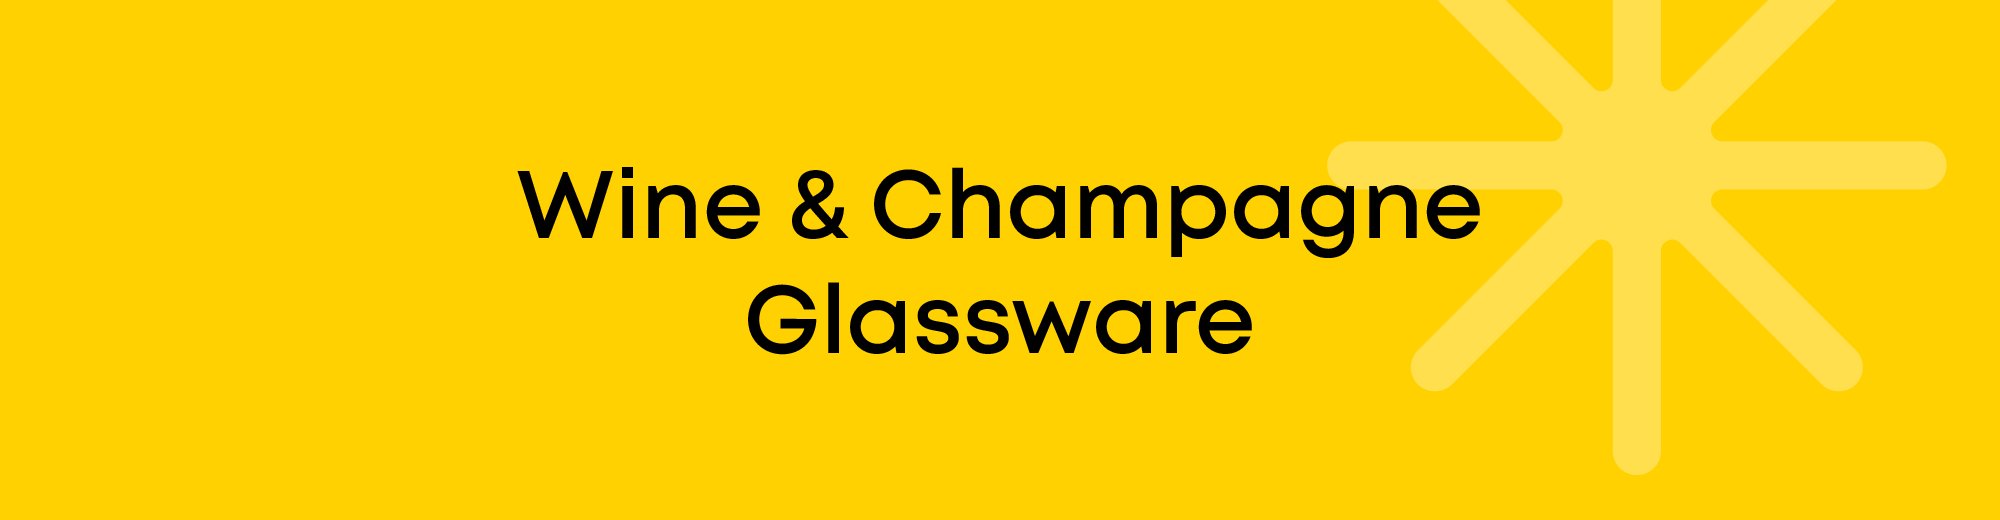 Wine and Champagne Glassware